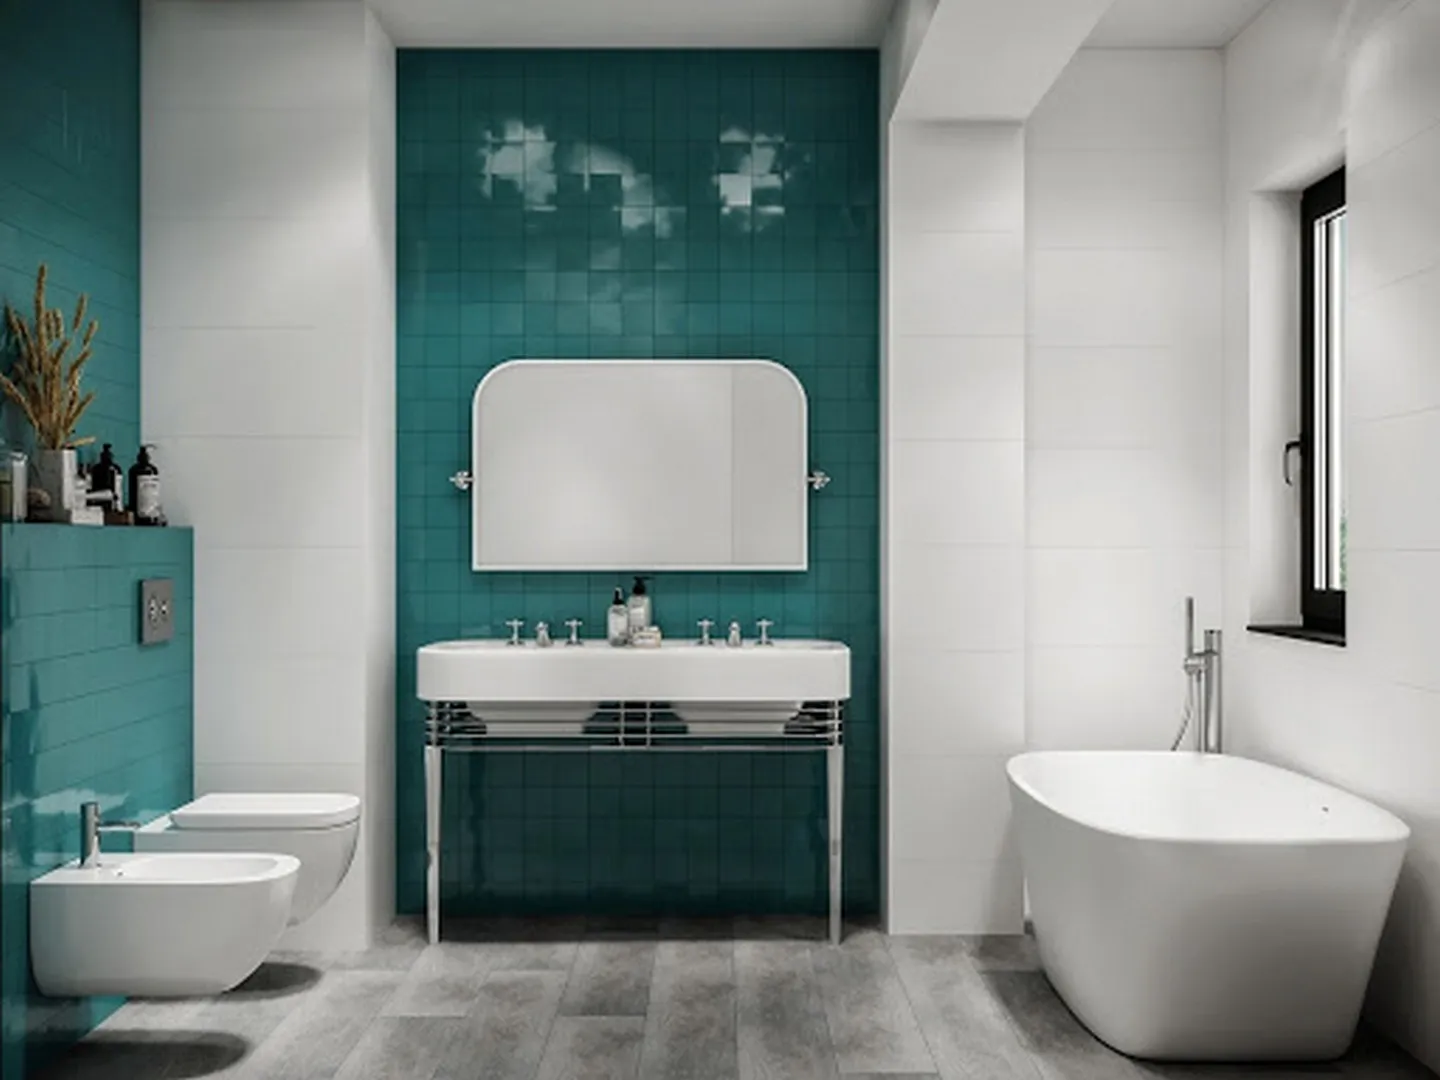 Gạch ốp nhà tắm nhỏ đơn sắc với mảng tường ốp gạch màu trắng và xanh